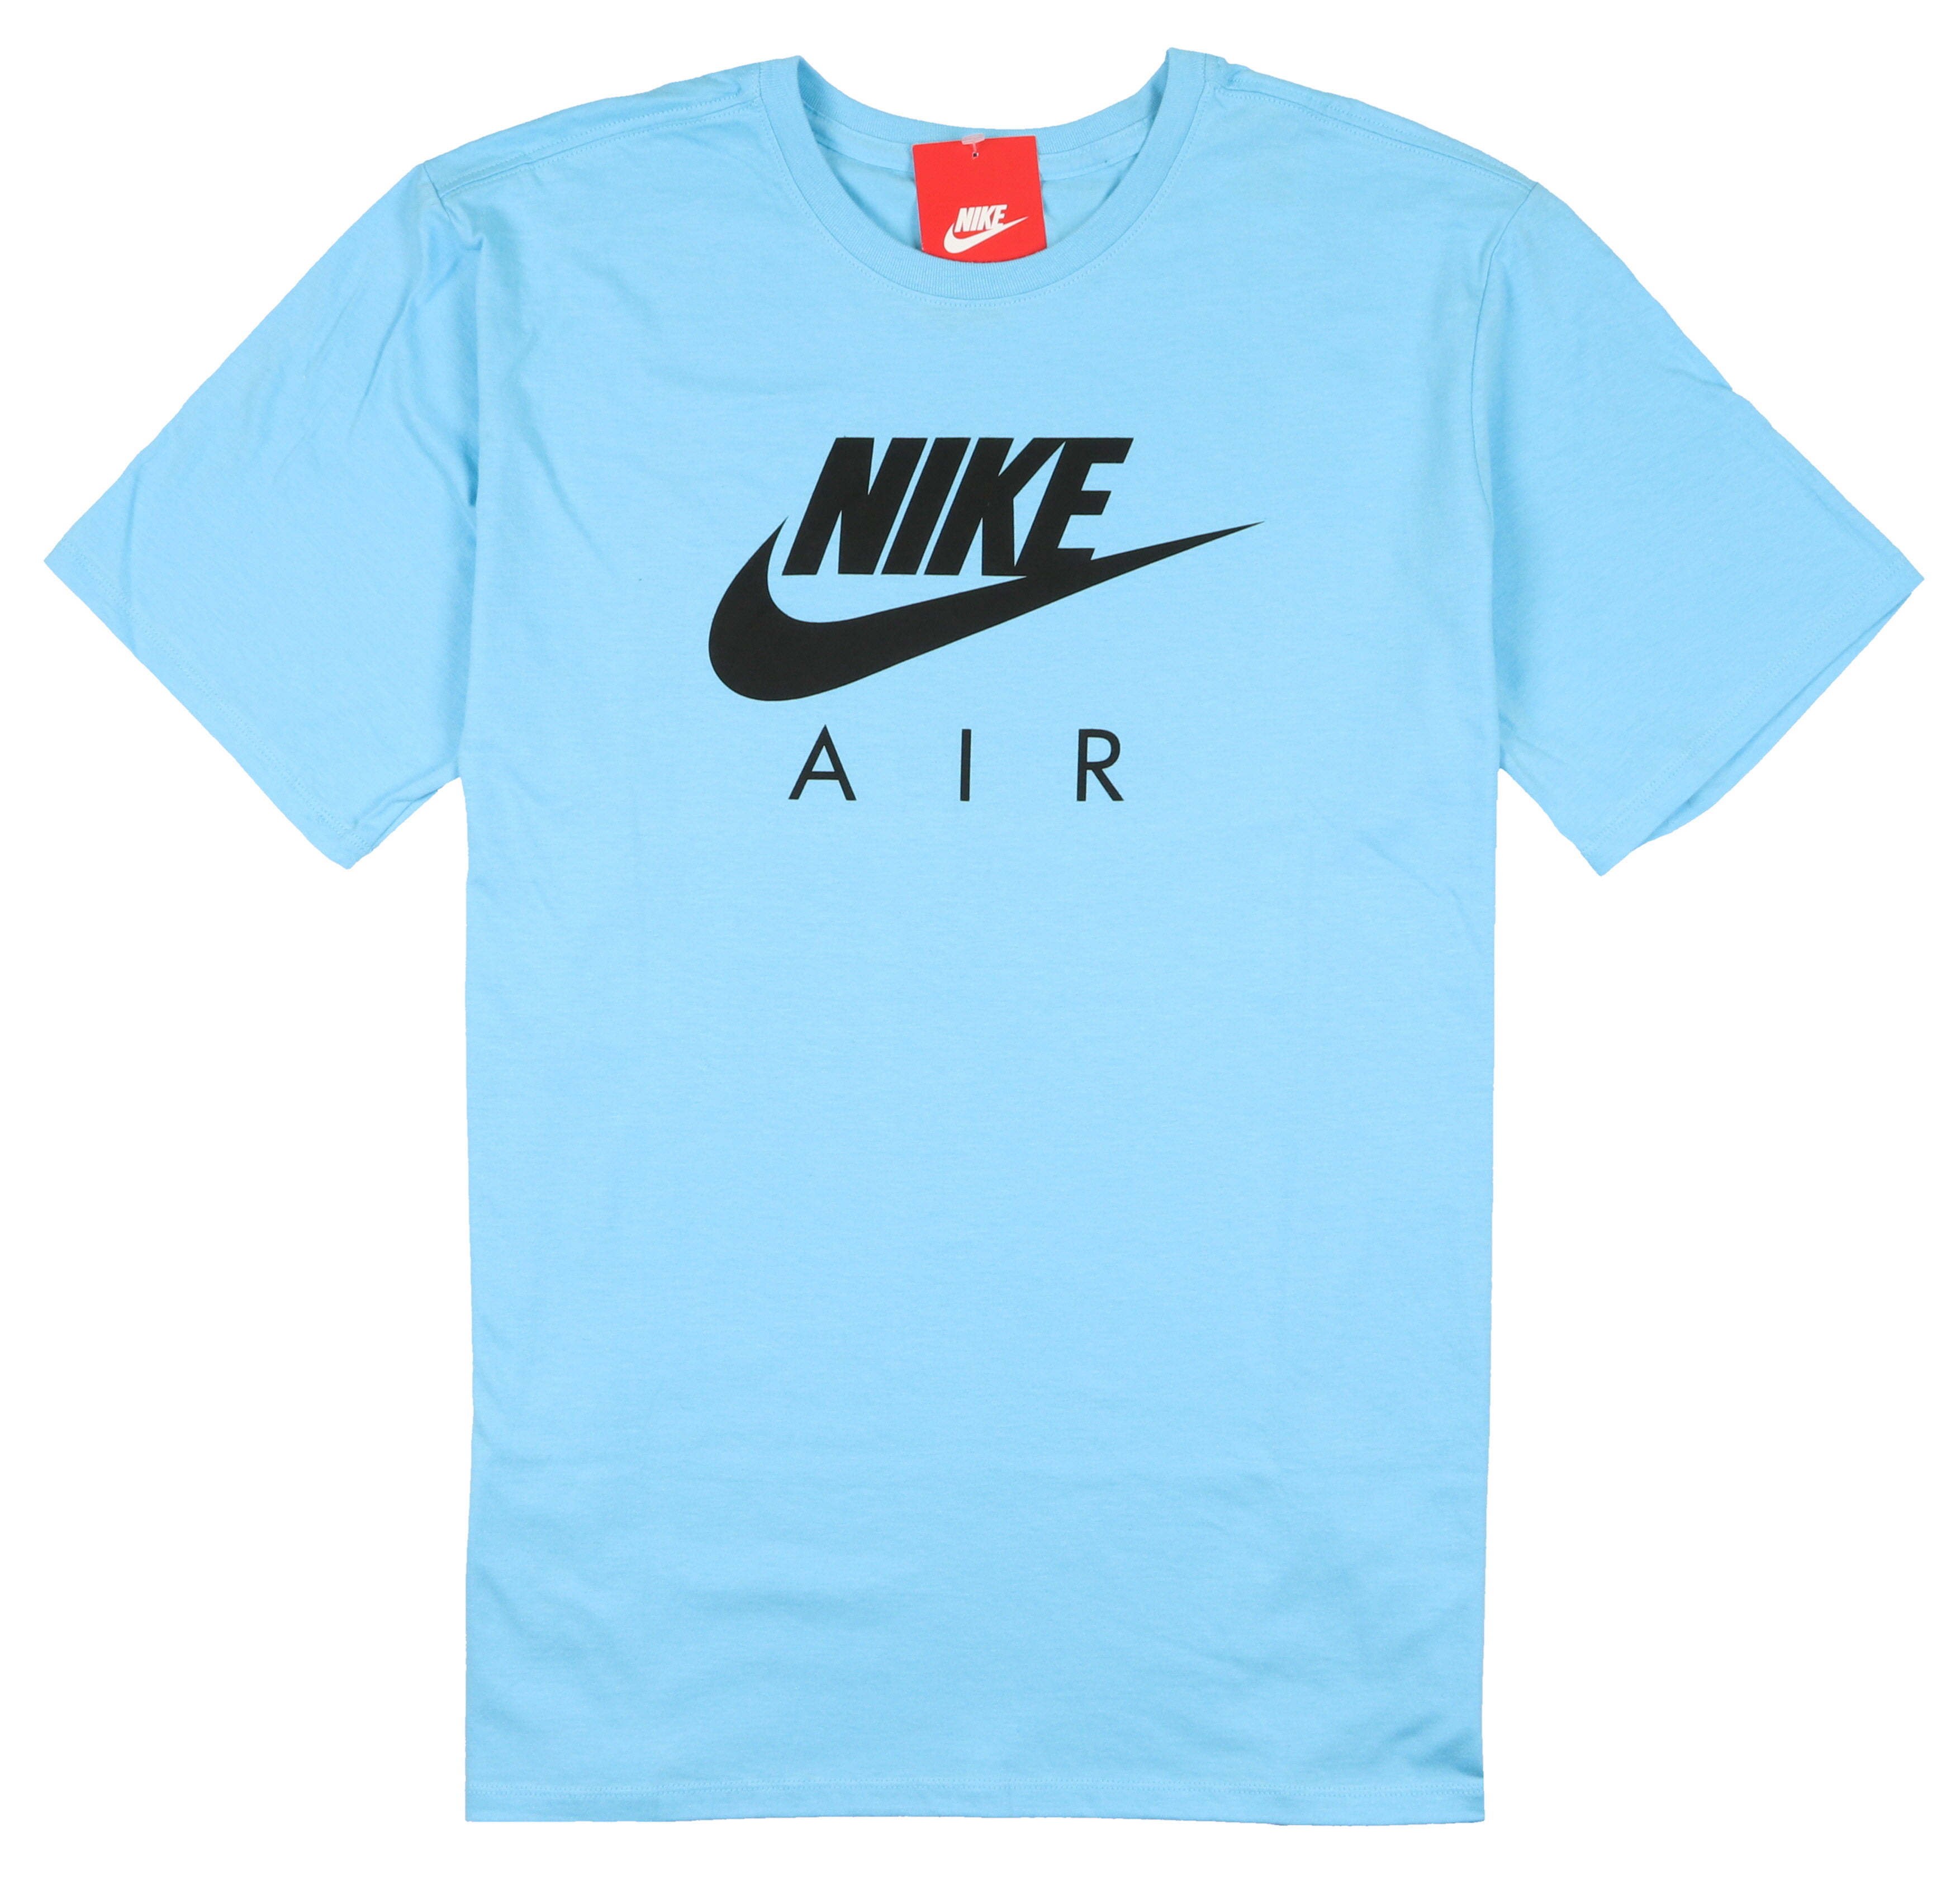 Buy > black nike air max shirt > in stock